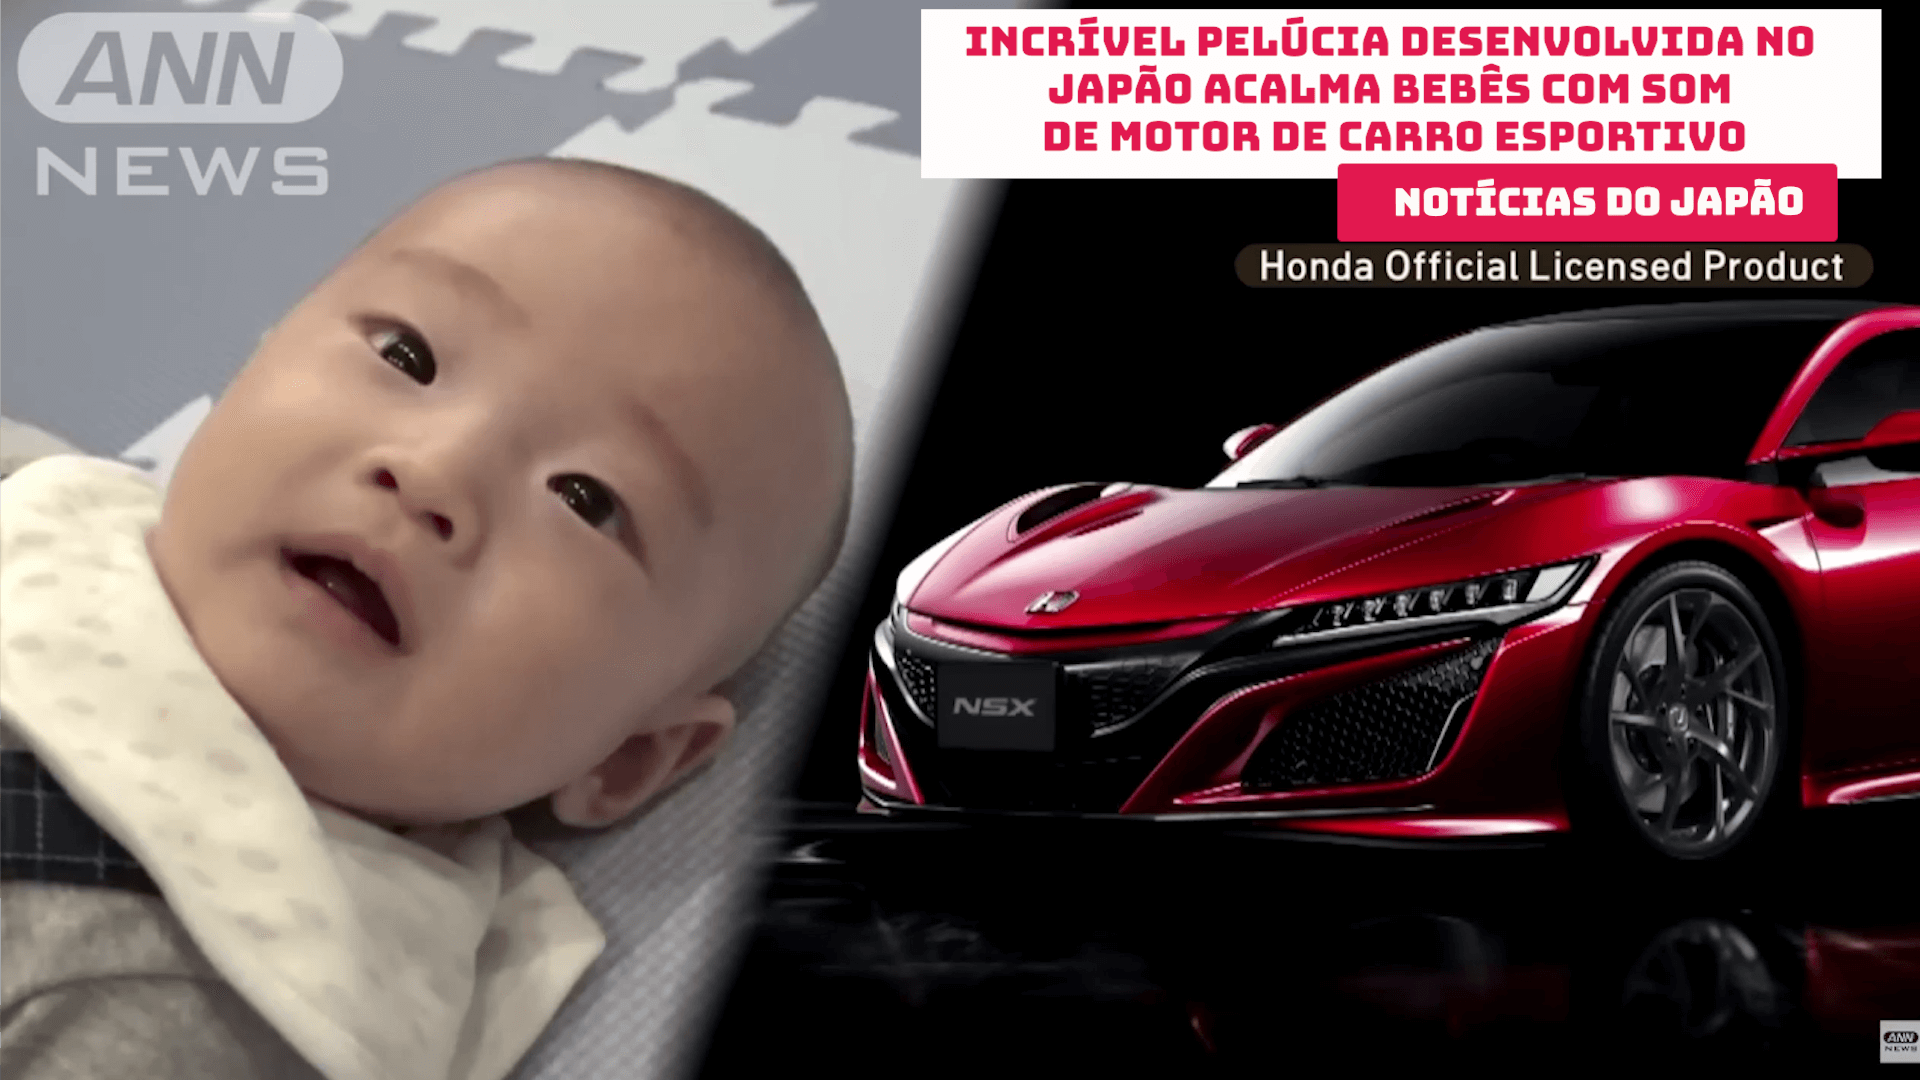 Incrível pelúcia desenvolvida no Japão acalma bebês com som de motor de carro esportivo